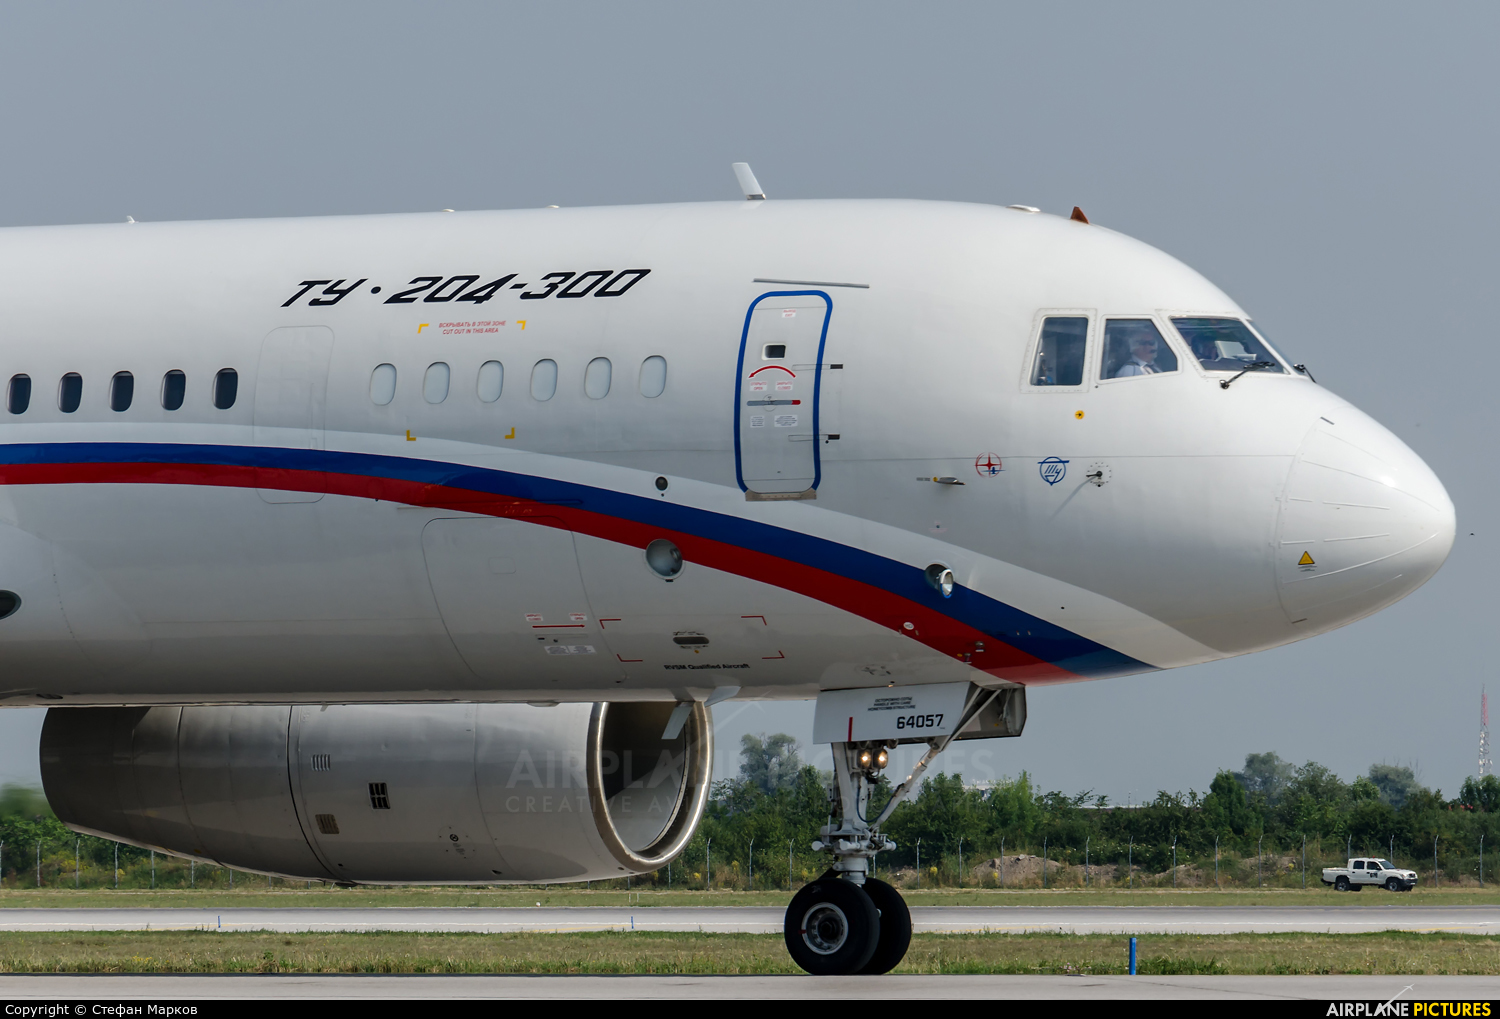 Rossiya RA-64057 aircraft at Sofia